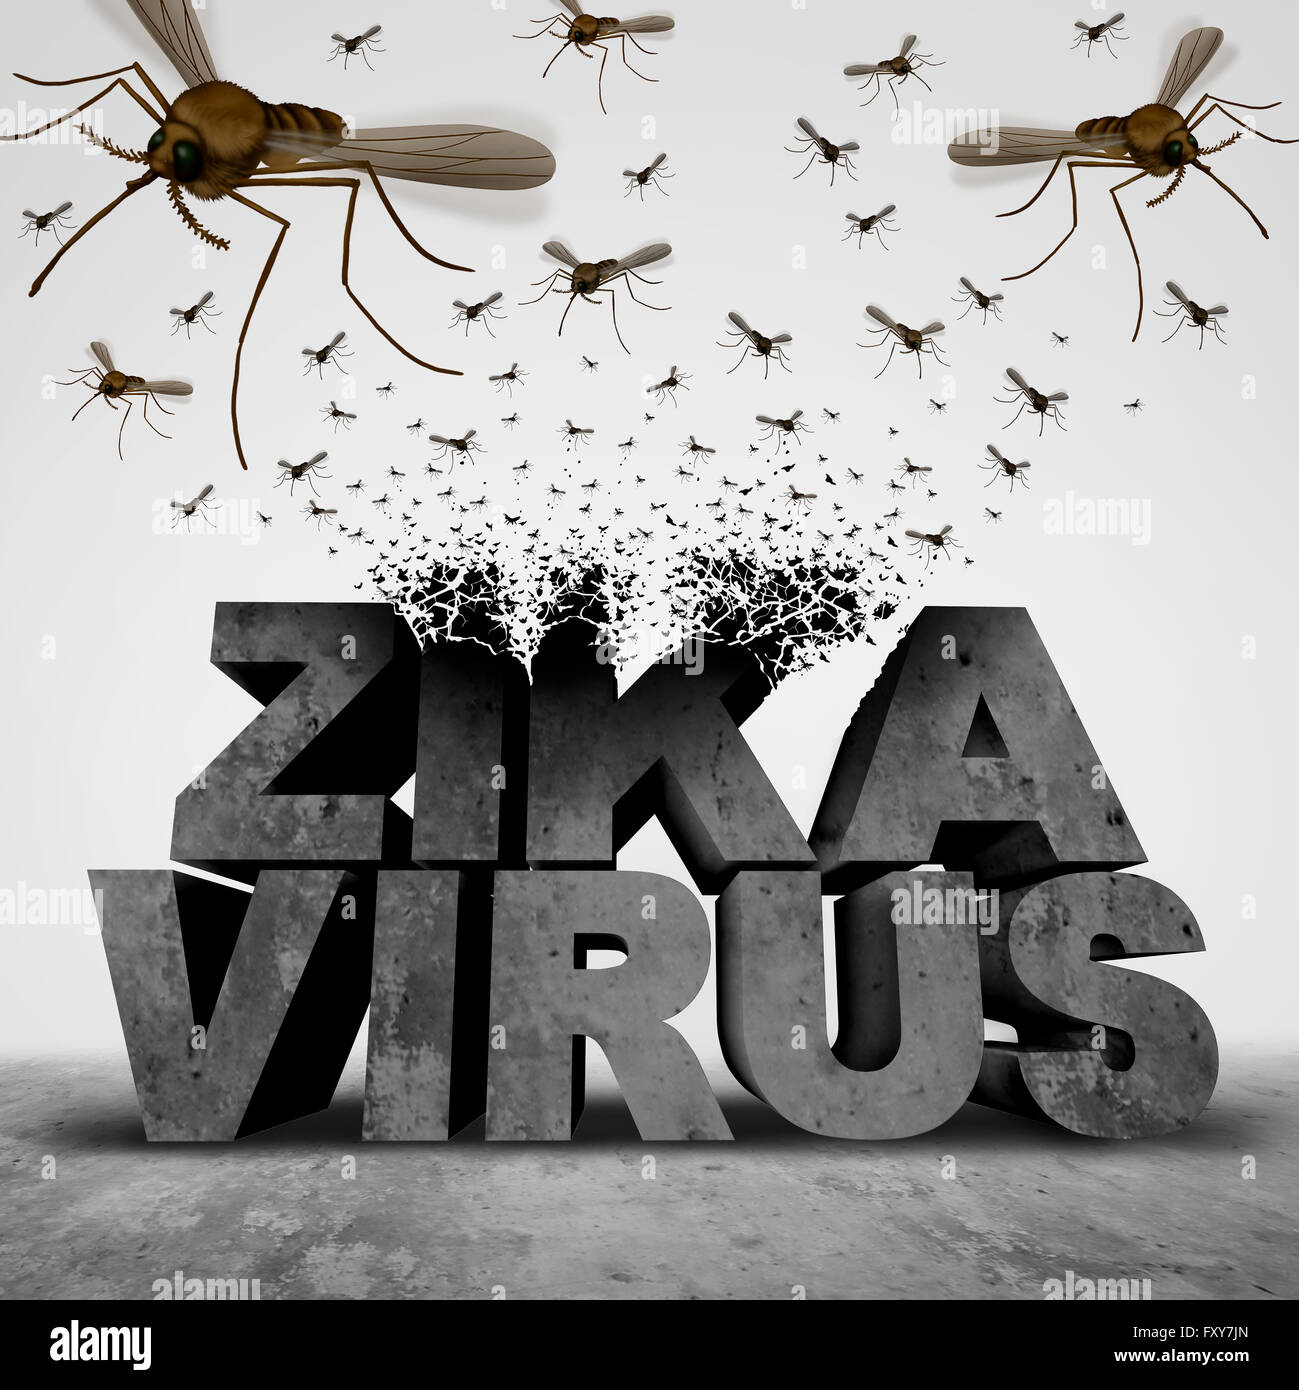 Danger virus Zika concept comme une illustration 3D de la transformation de texte à un groupe de l'essaimage des moustiques propagation de maladies infectieuses comme l'épidémie Une épidémie de santé publique et de la peur. Banque D'Images